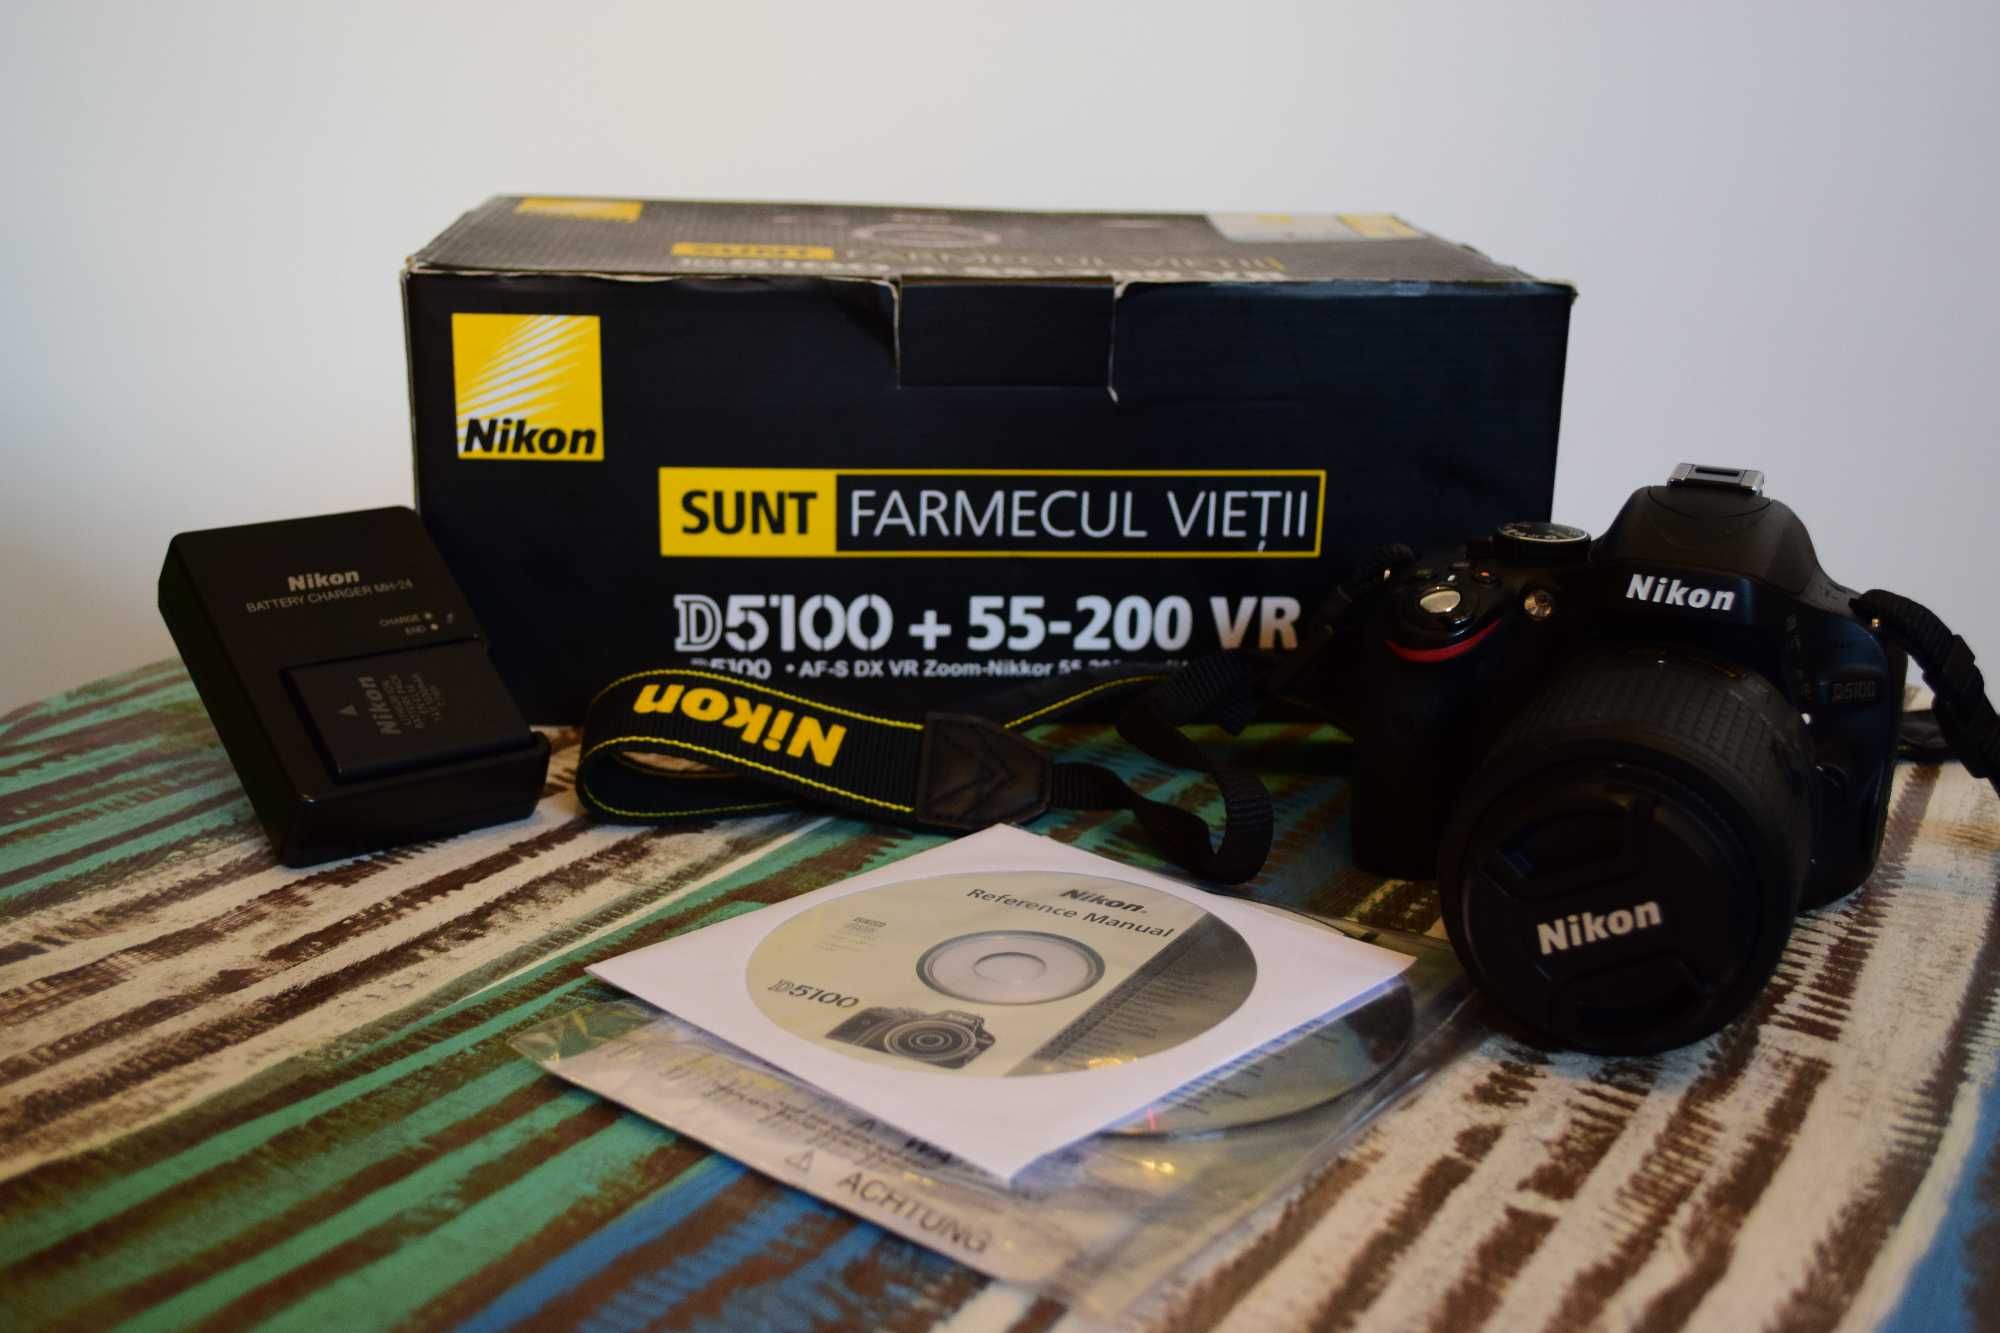 Nikon D5100 + Obiectiv Nikon 55-200mm f/4-5.6G AF-S DX ED VR.